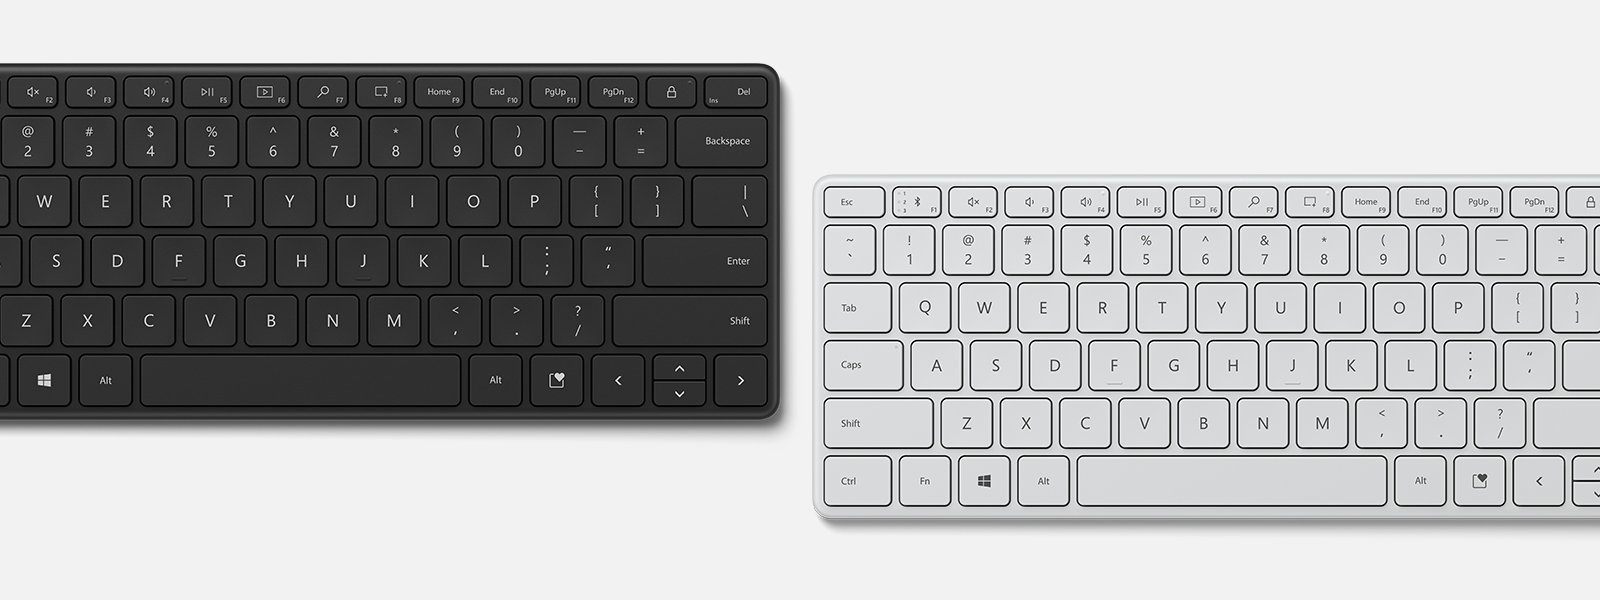 ブラックとグレーの Microsoft Designer Compact Keyboard。 